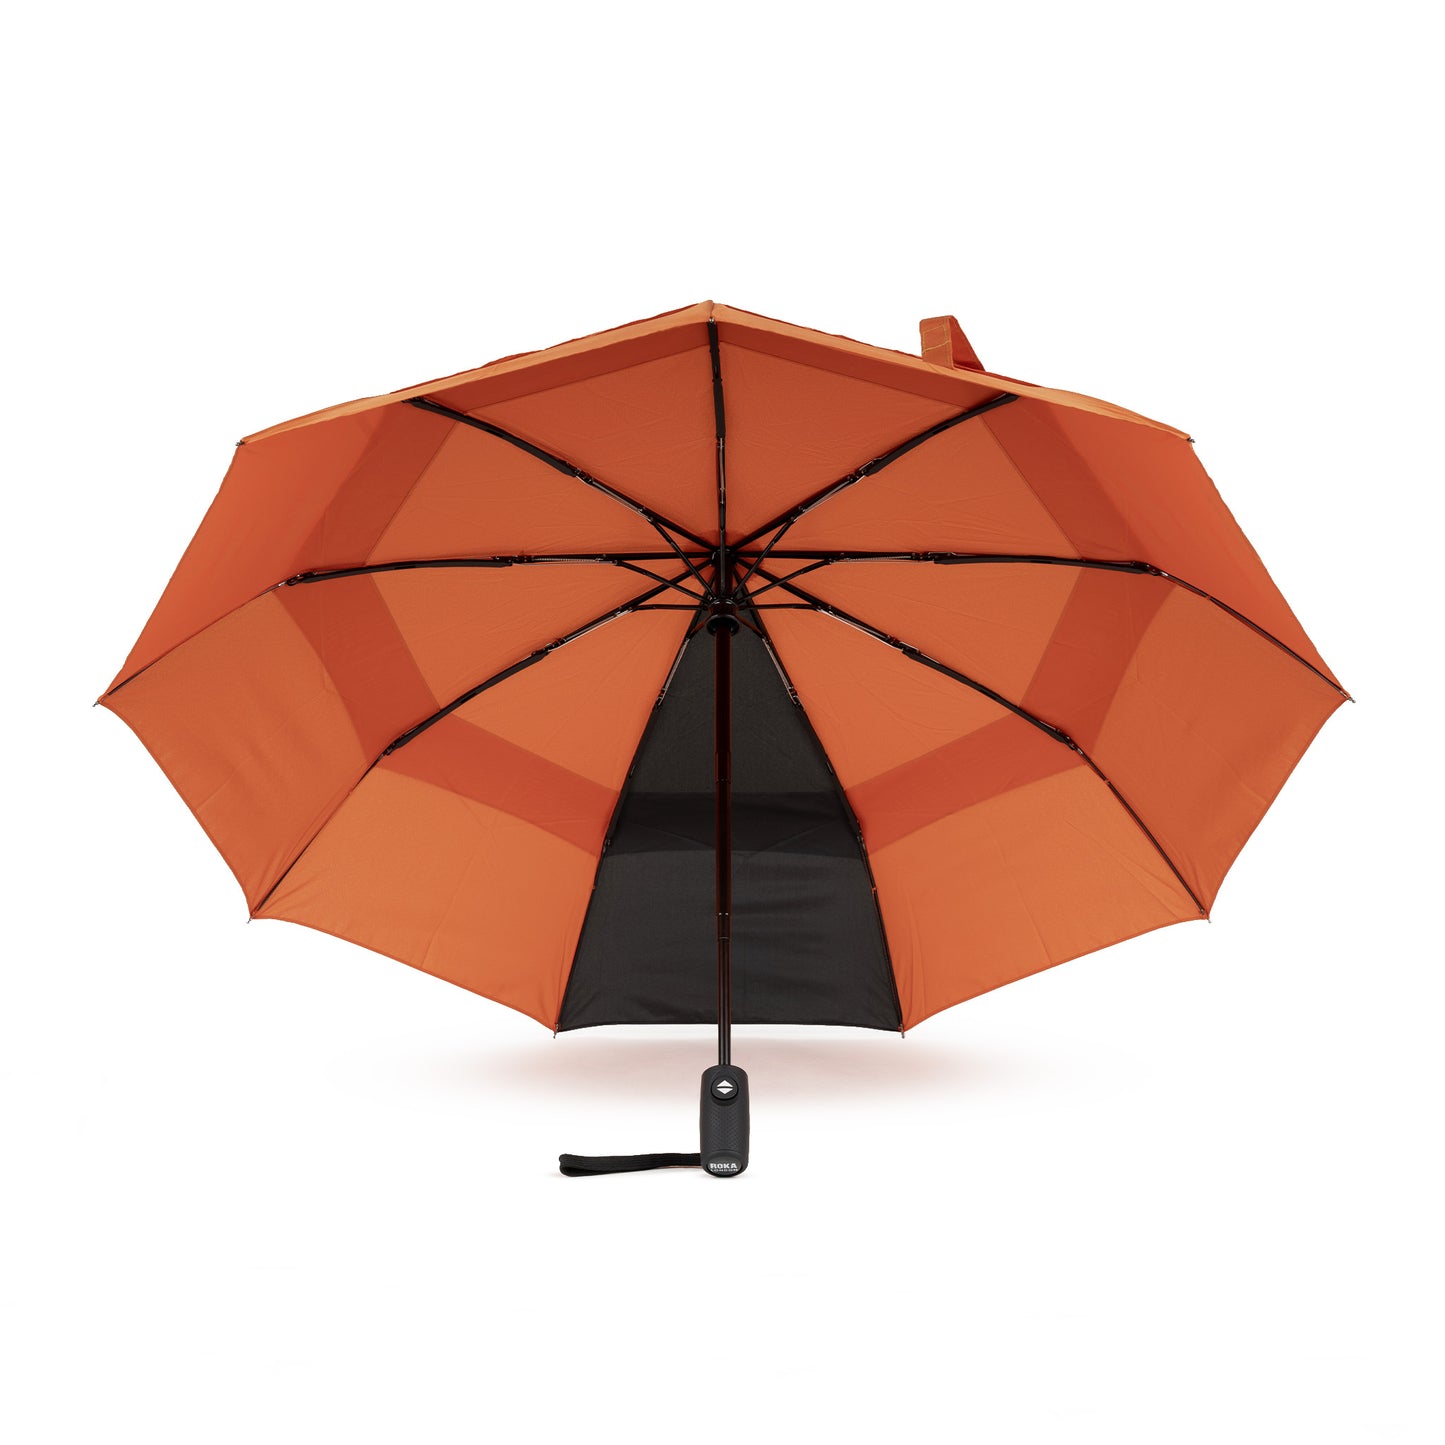 Roka London Waterloo Sustainable Umbrella, Burnt Orange & Black